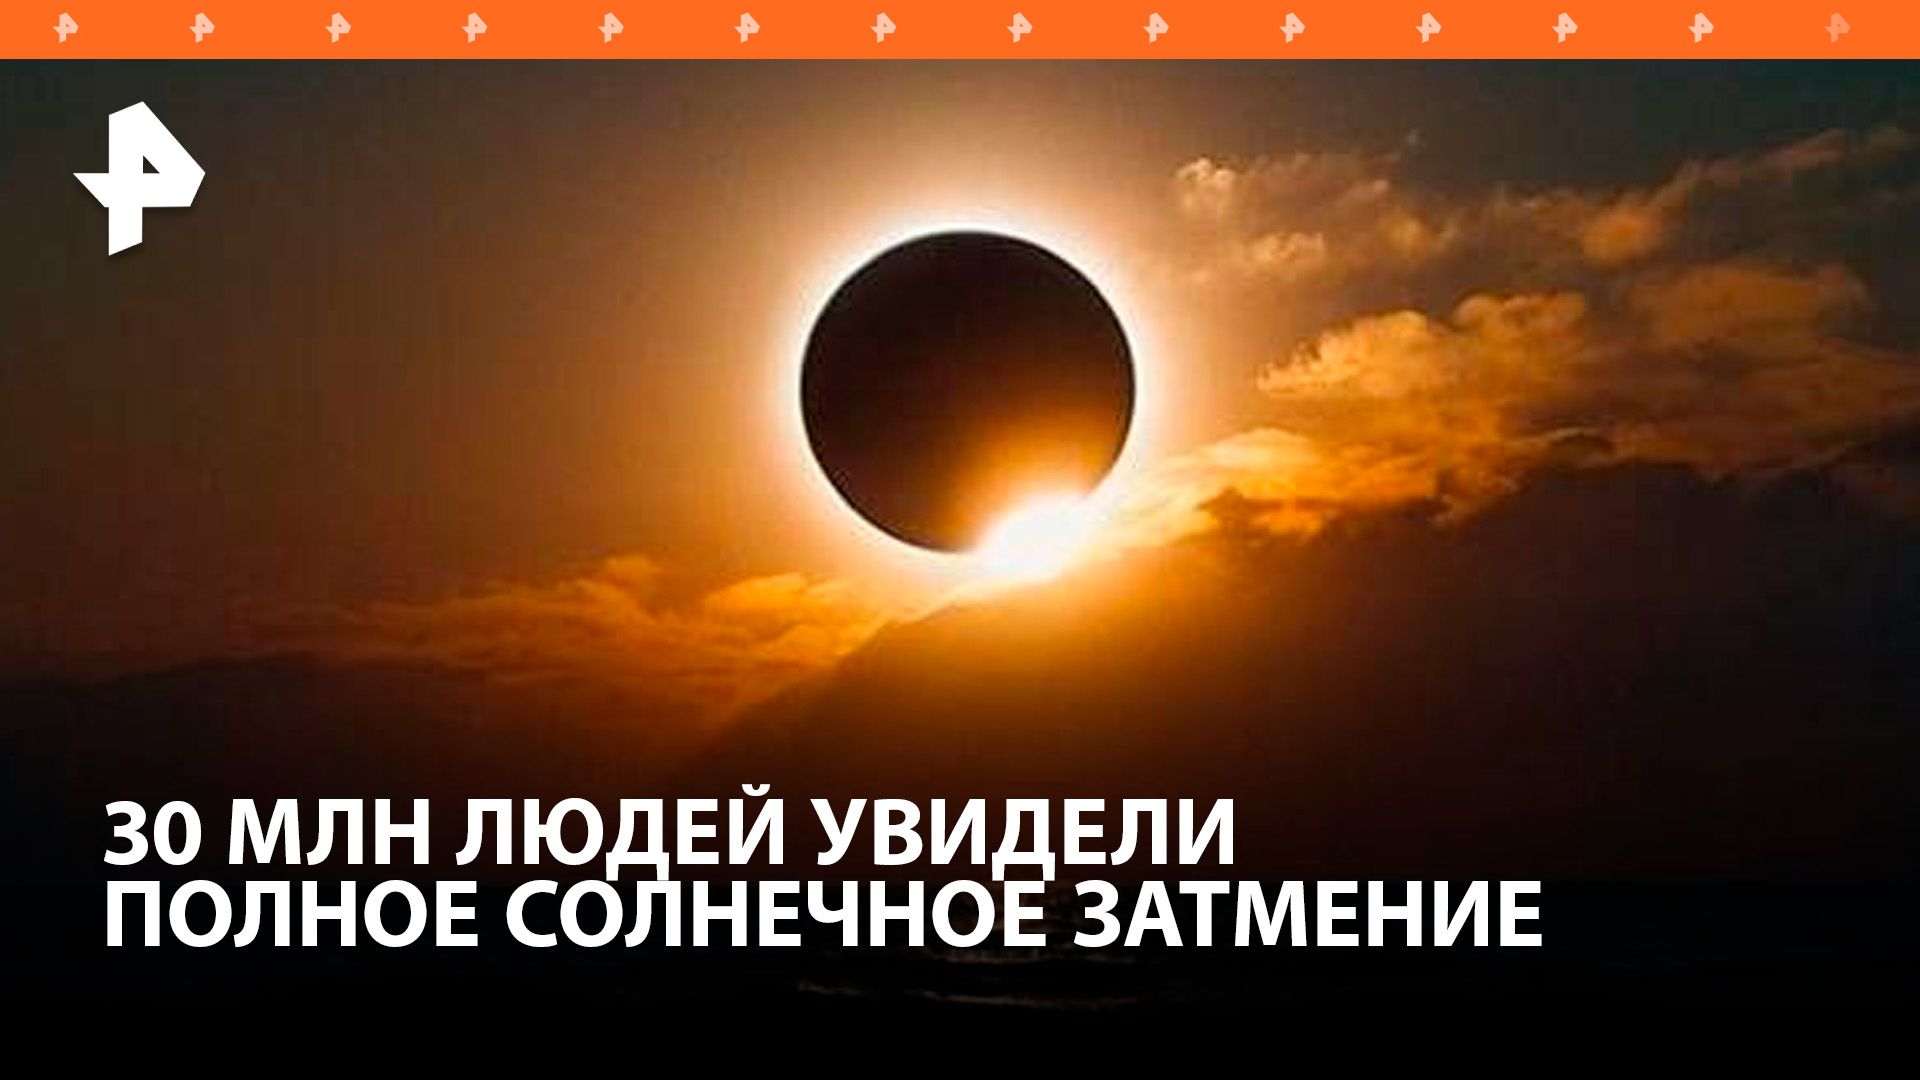 Около 30 миллионов человек увидели полное солнечное затмение / РЕН Новости